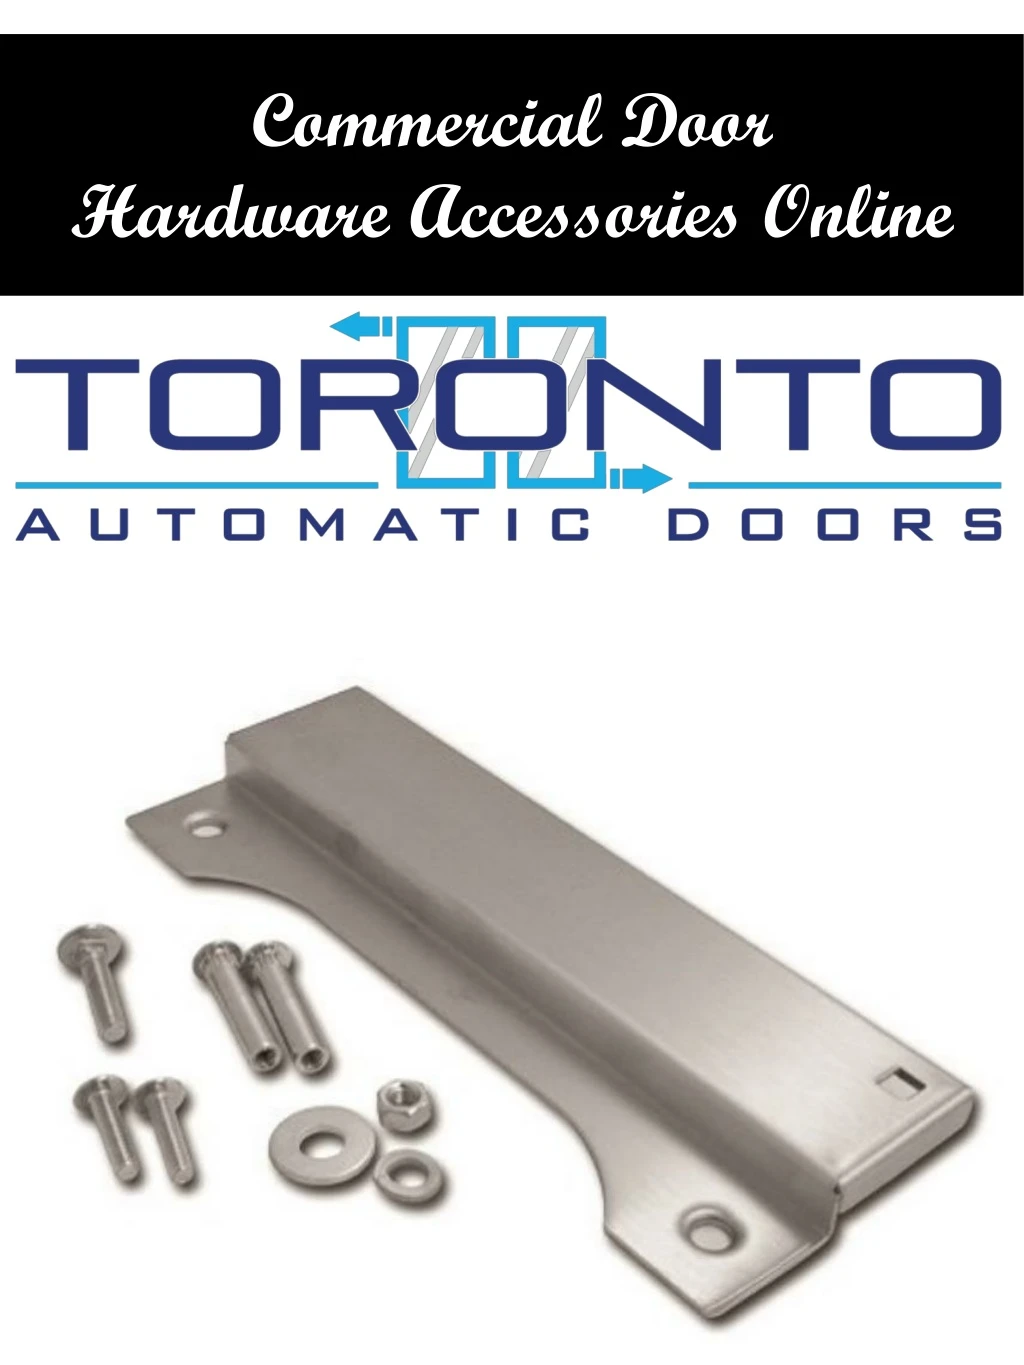 commercial door hardware accessories online